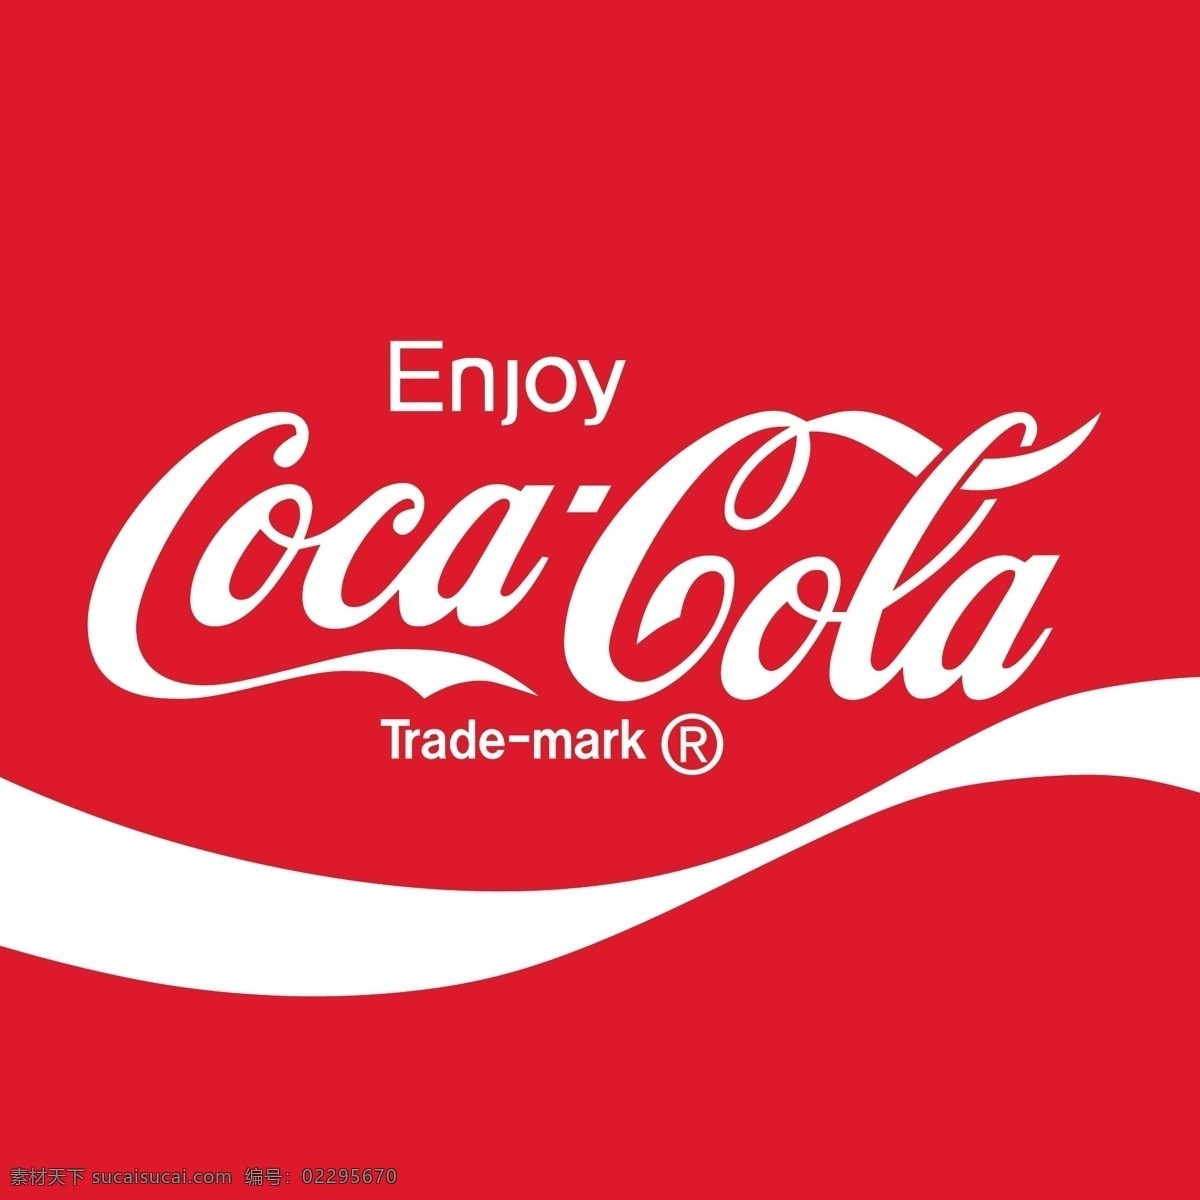 可口可乐 矢量 logo 标志 品牌logo 英文字体变形 矢量图 其他矢量图